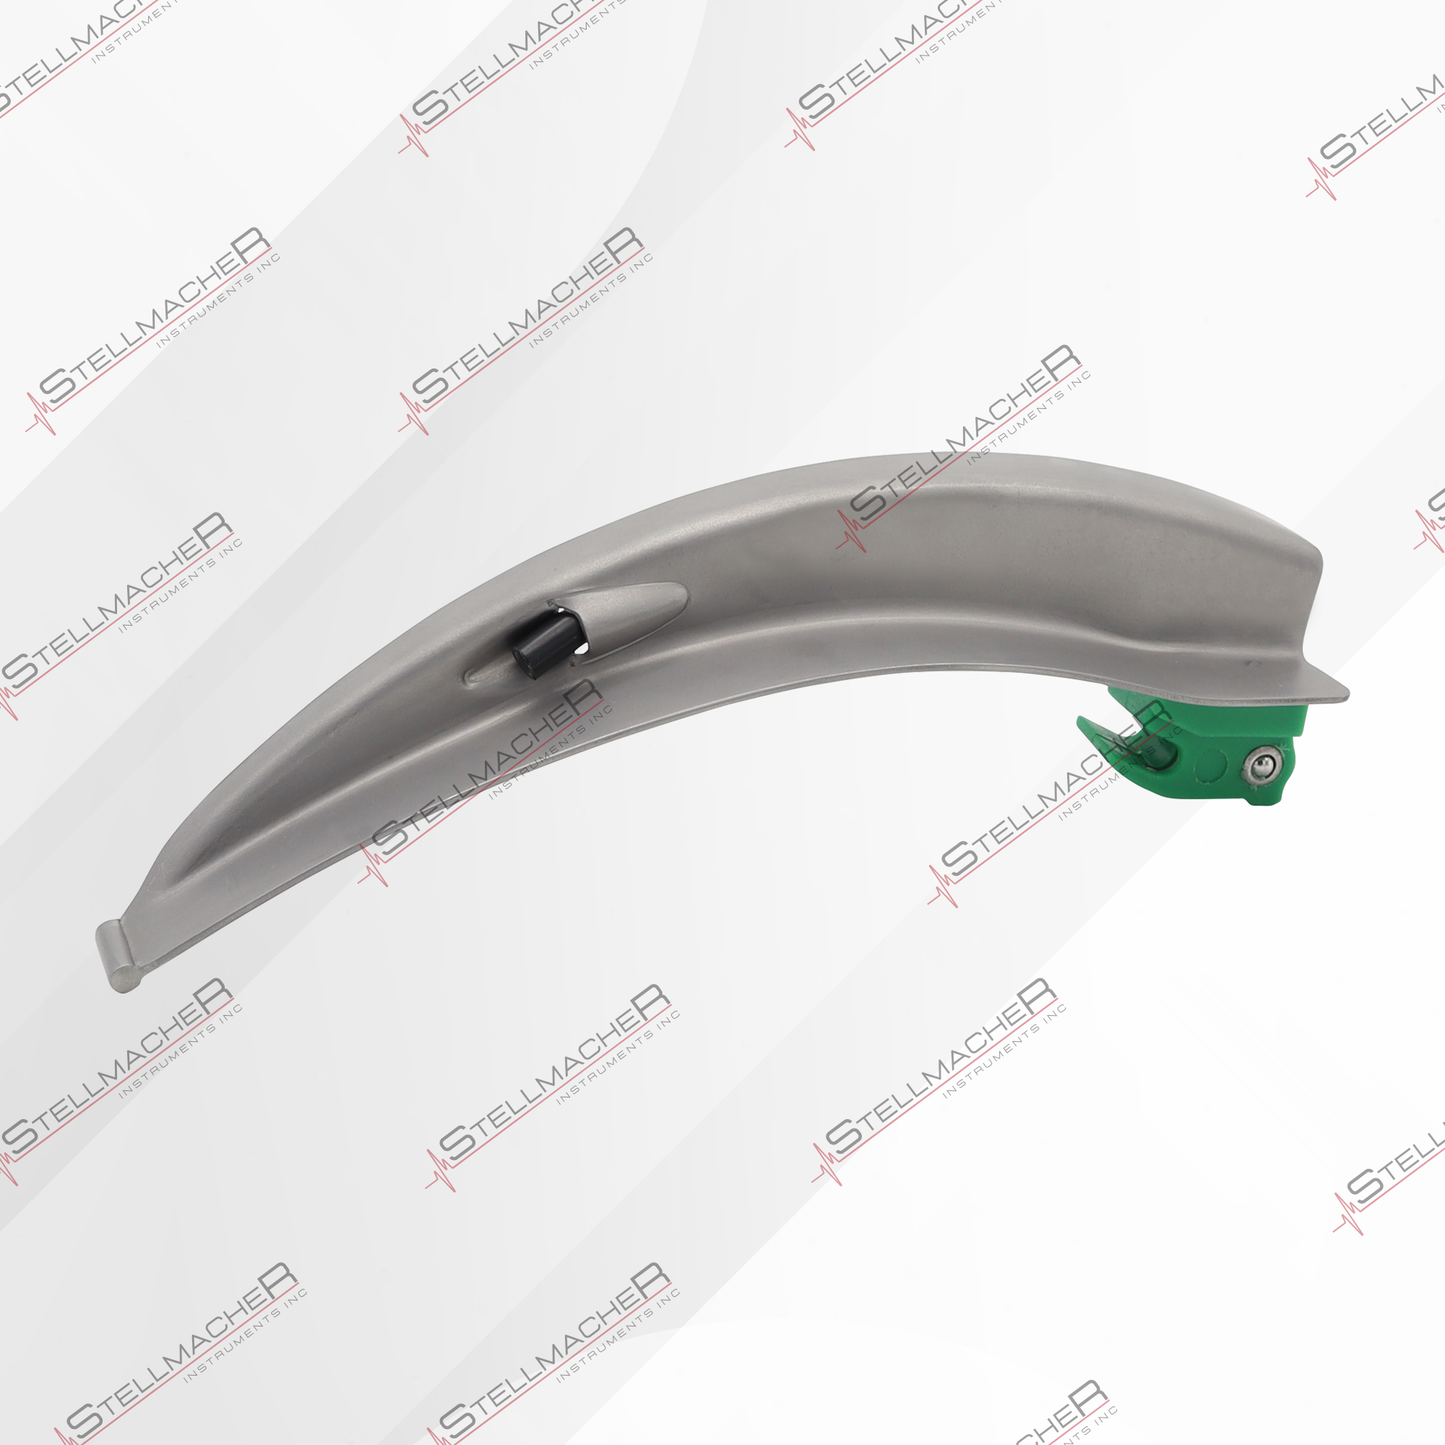 Single Use Medical Laryngoscope Blades Macintosh – 20 Pcs Pack